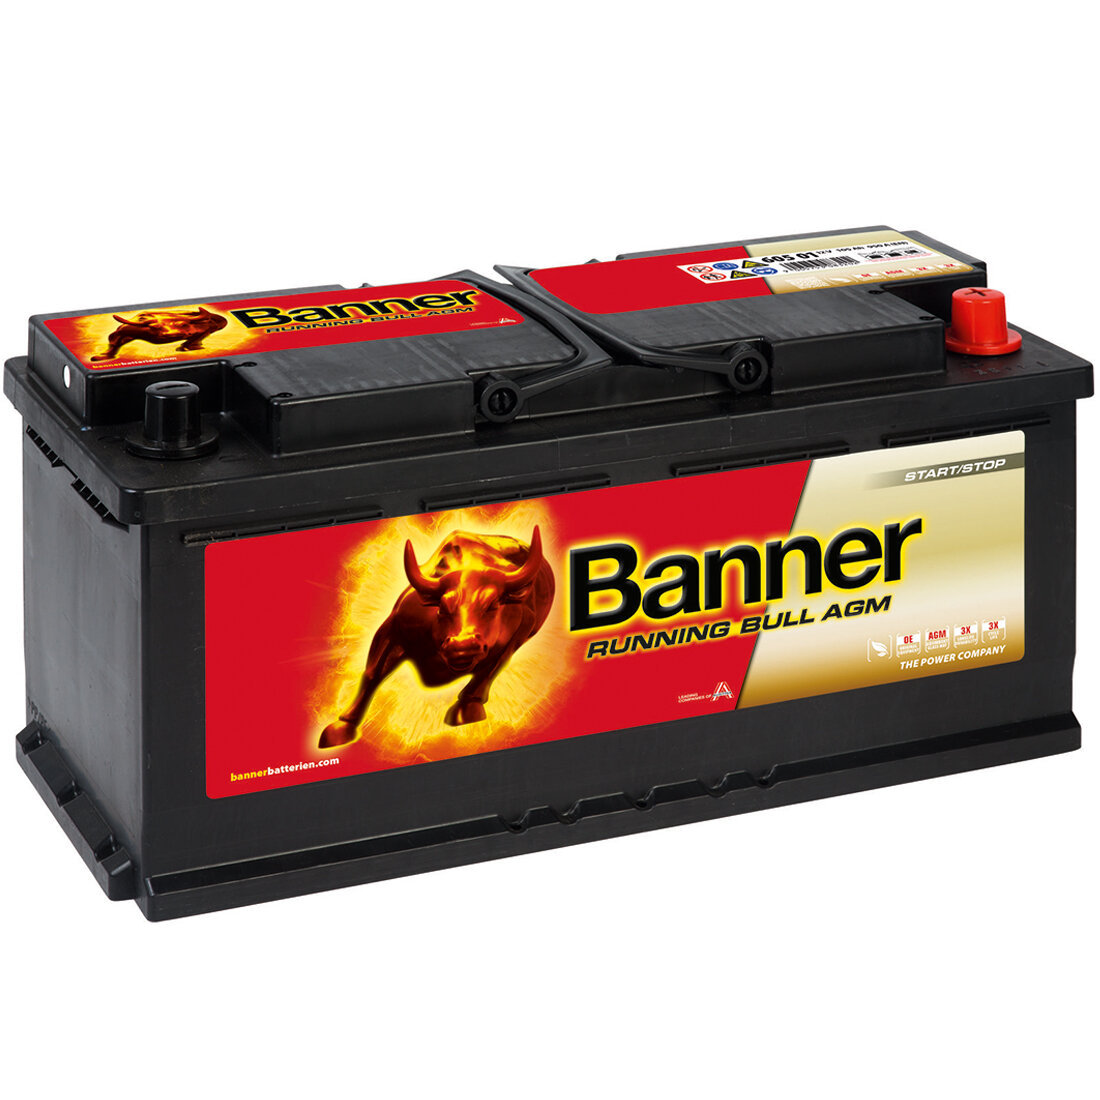 https://www.batteriespezialist.de/media/image/product/4114/lg/banner-running-bull-agm-605-01-starterbatterie-105ah-12v.jpg